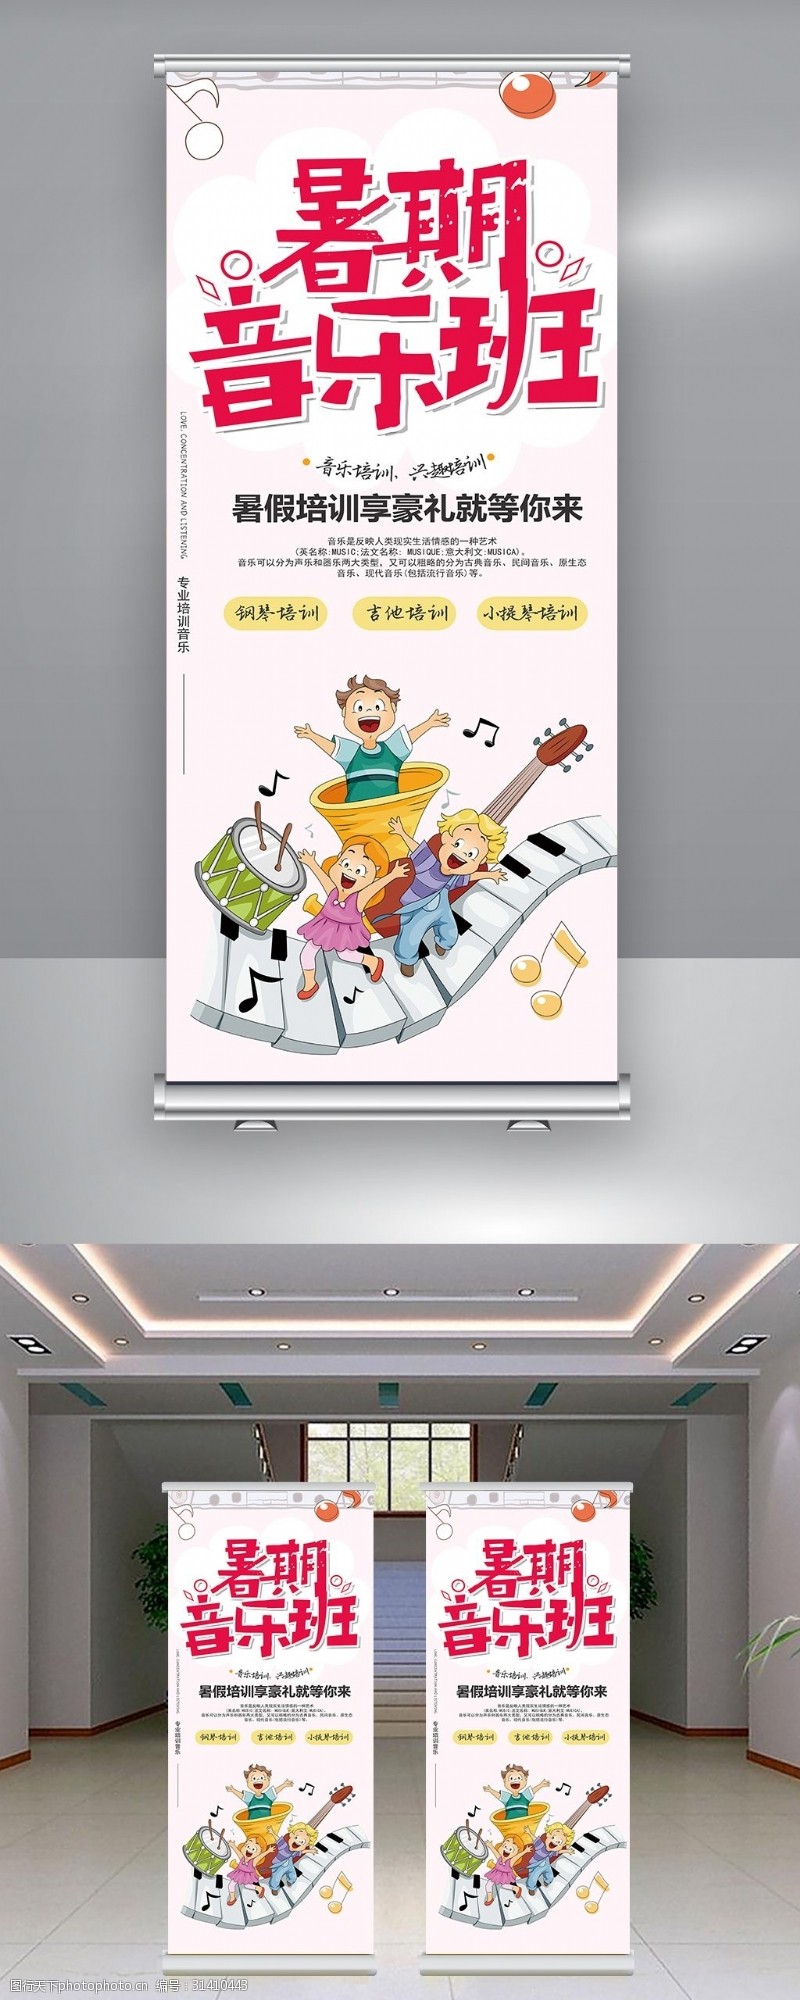 音乐展板免费下载卡通音乐班招生易拉宝模板设计